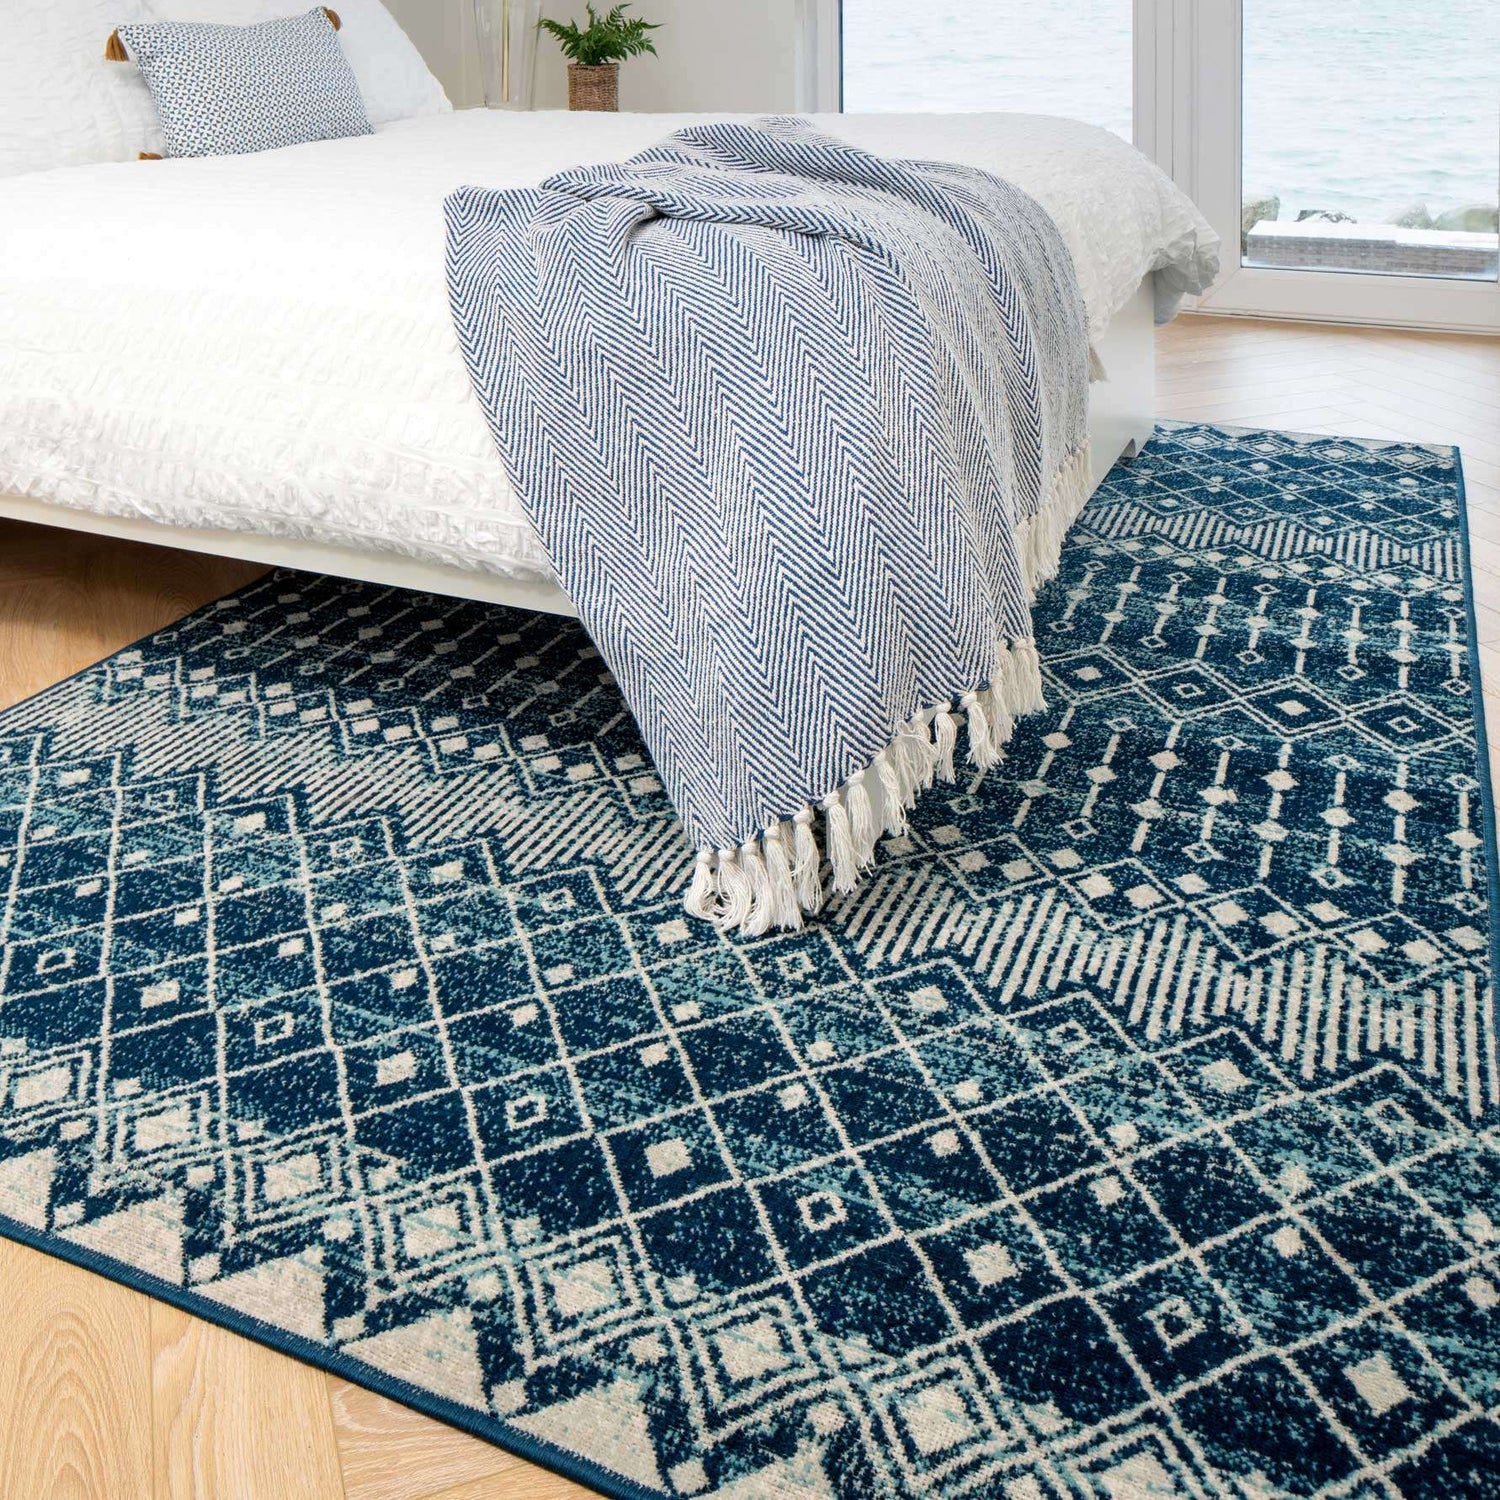 Blue Moroccan Tile Living Room Rug